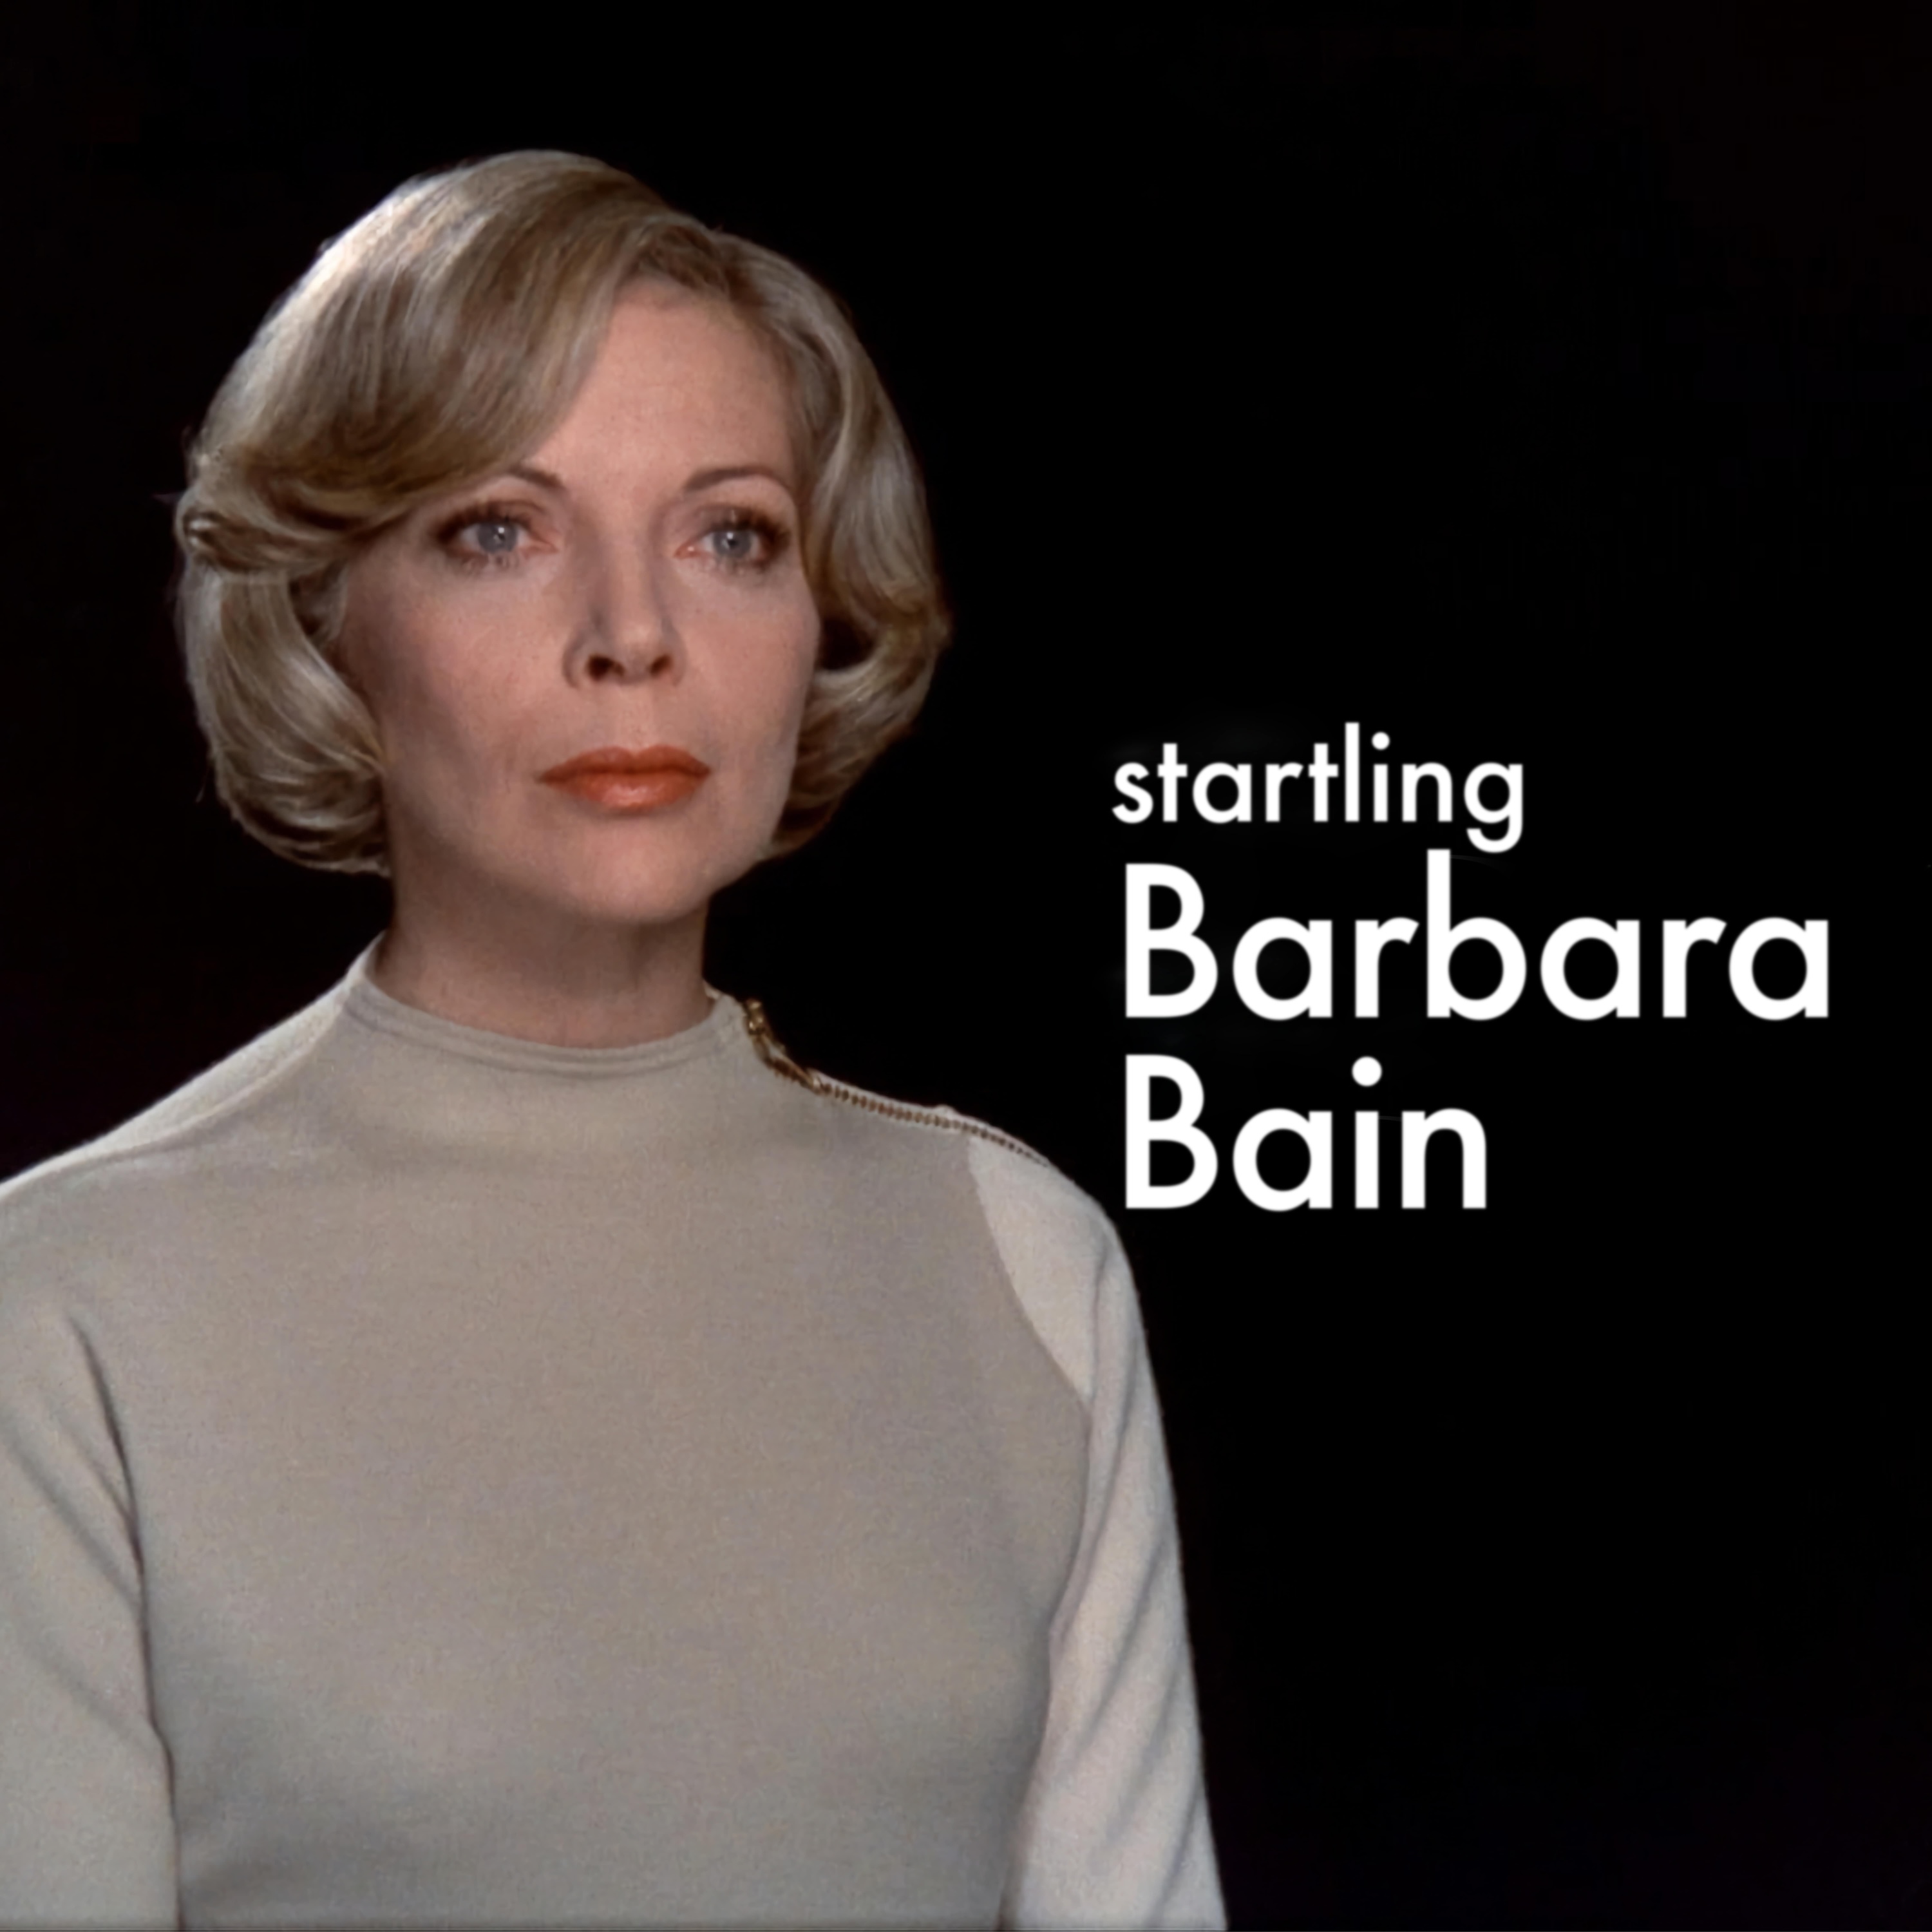 Startling Barbara Bain logo